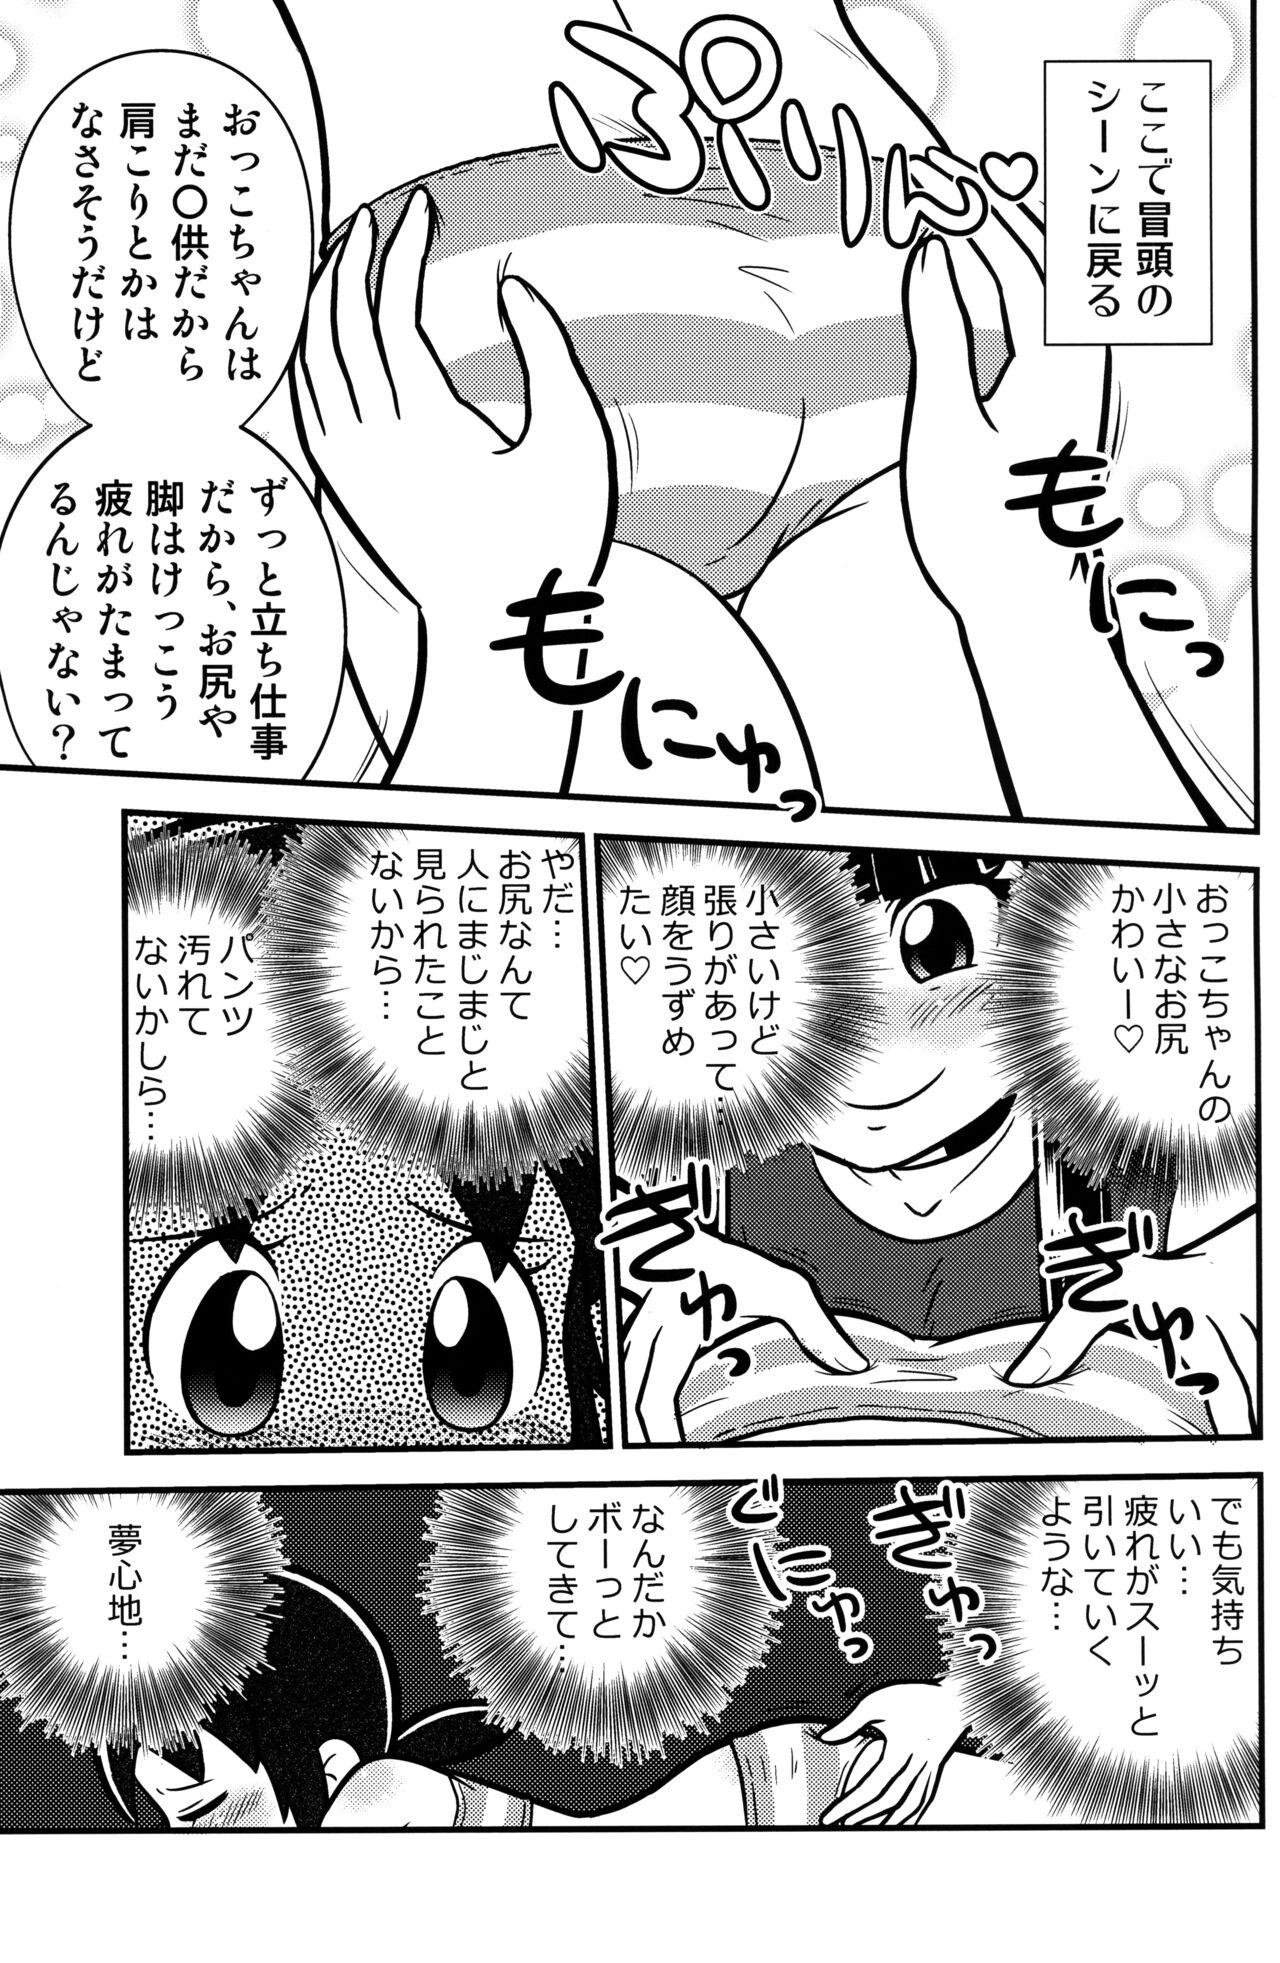 Pick Up Senkakubanrai! 2 - Waka okami wa shougakusei Argentino - Page 7